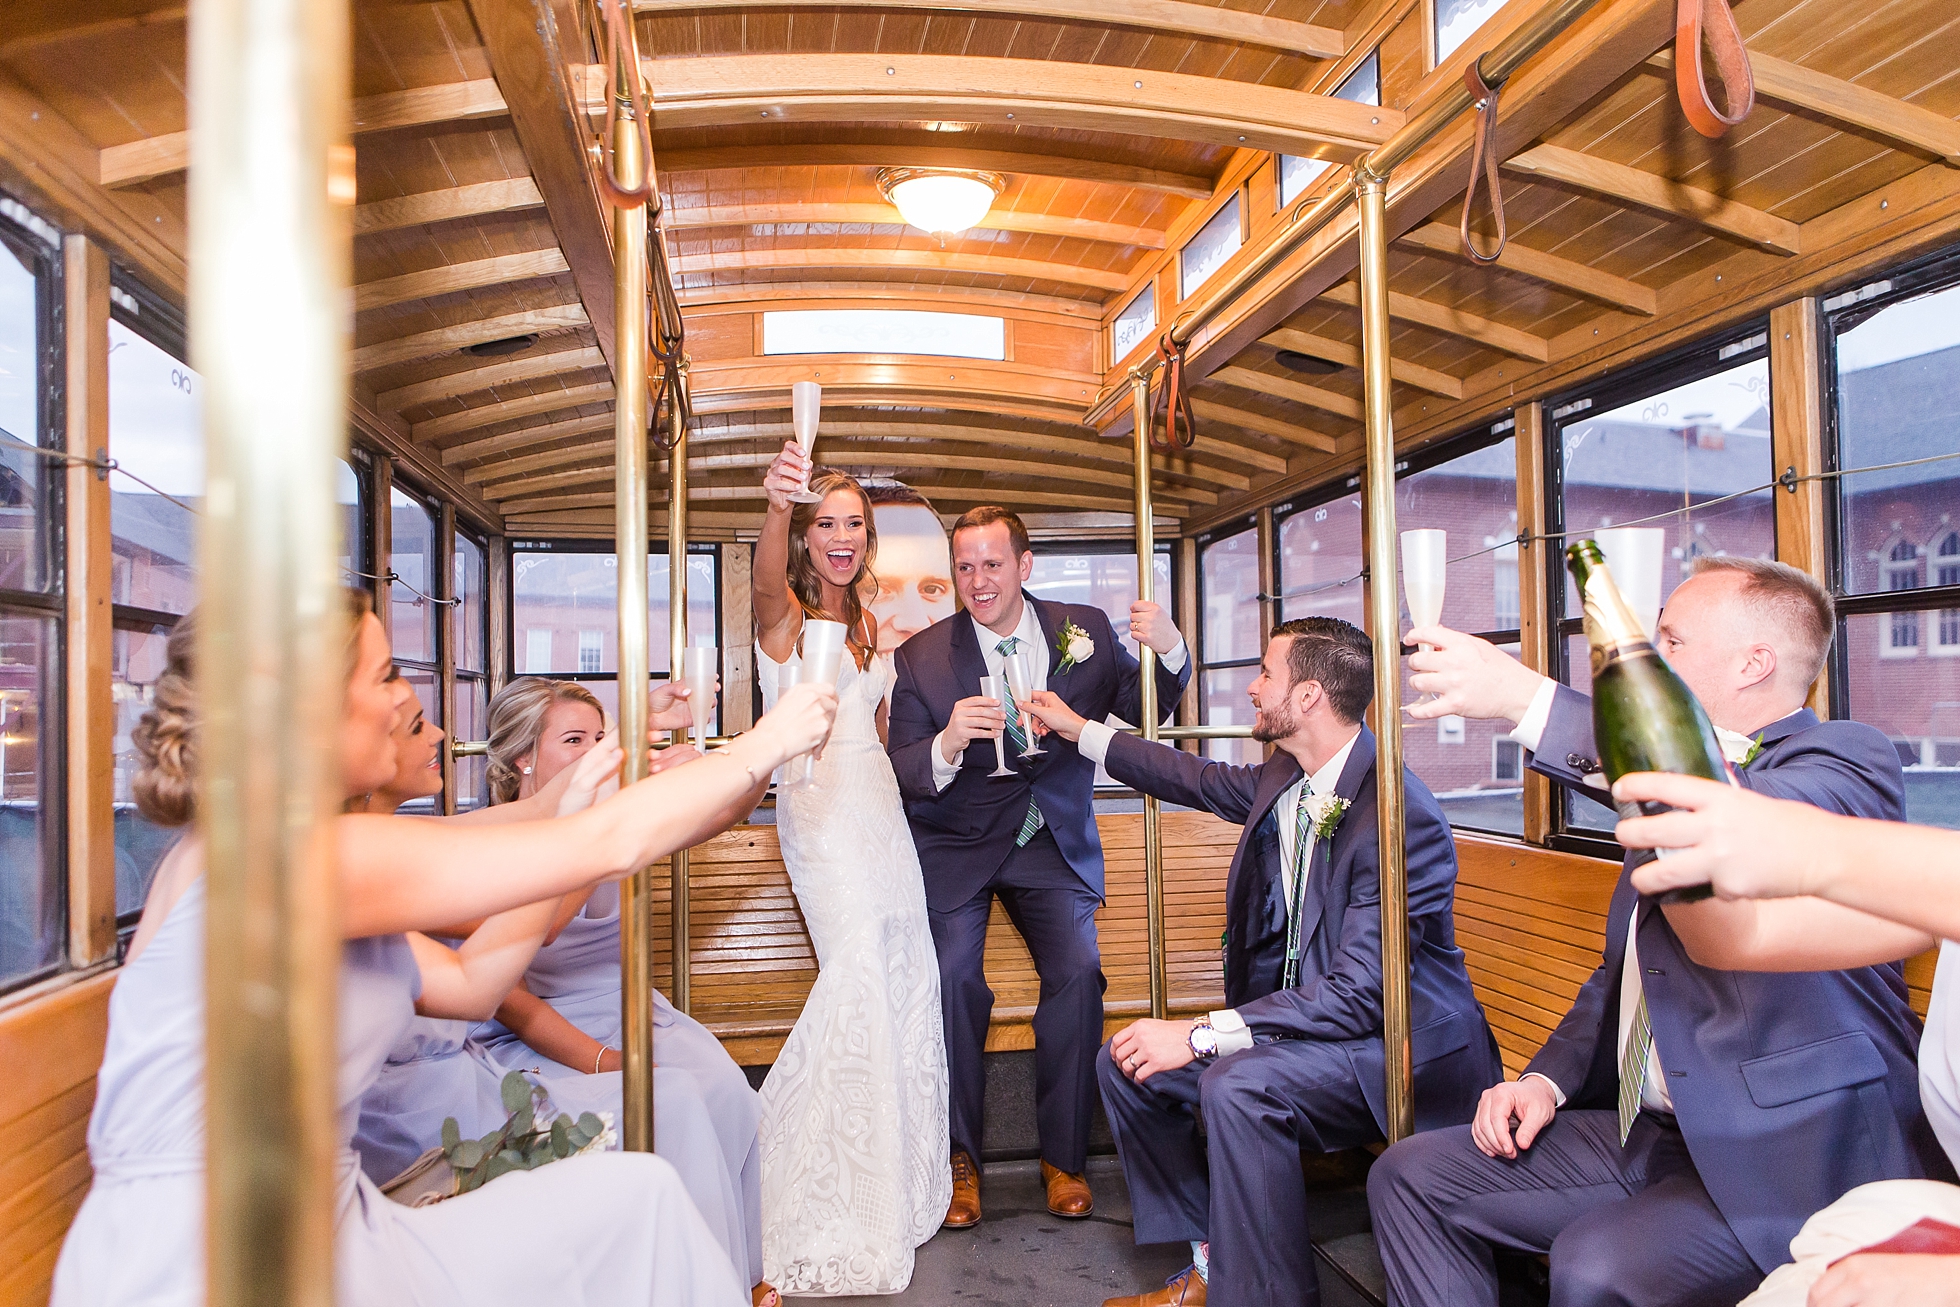 trolley wedding party shuttle bus